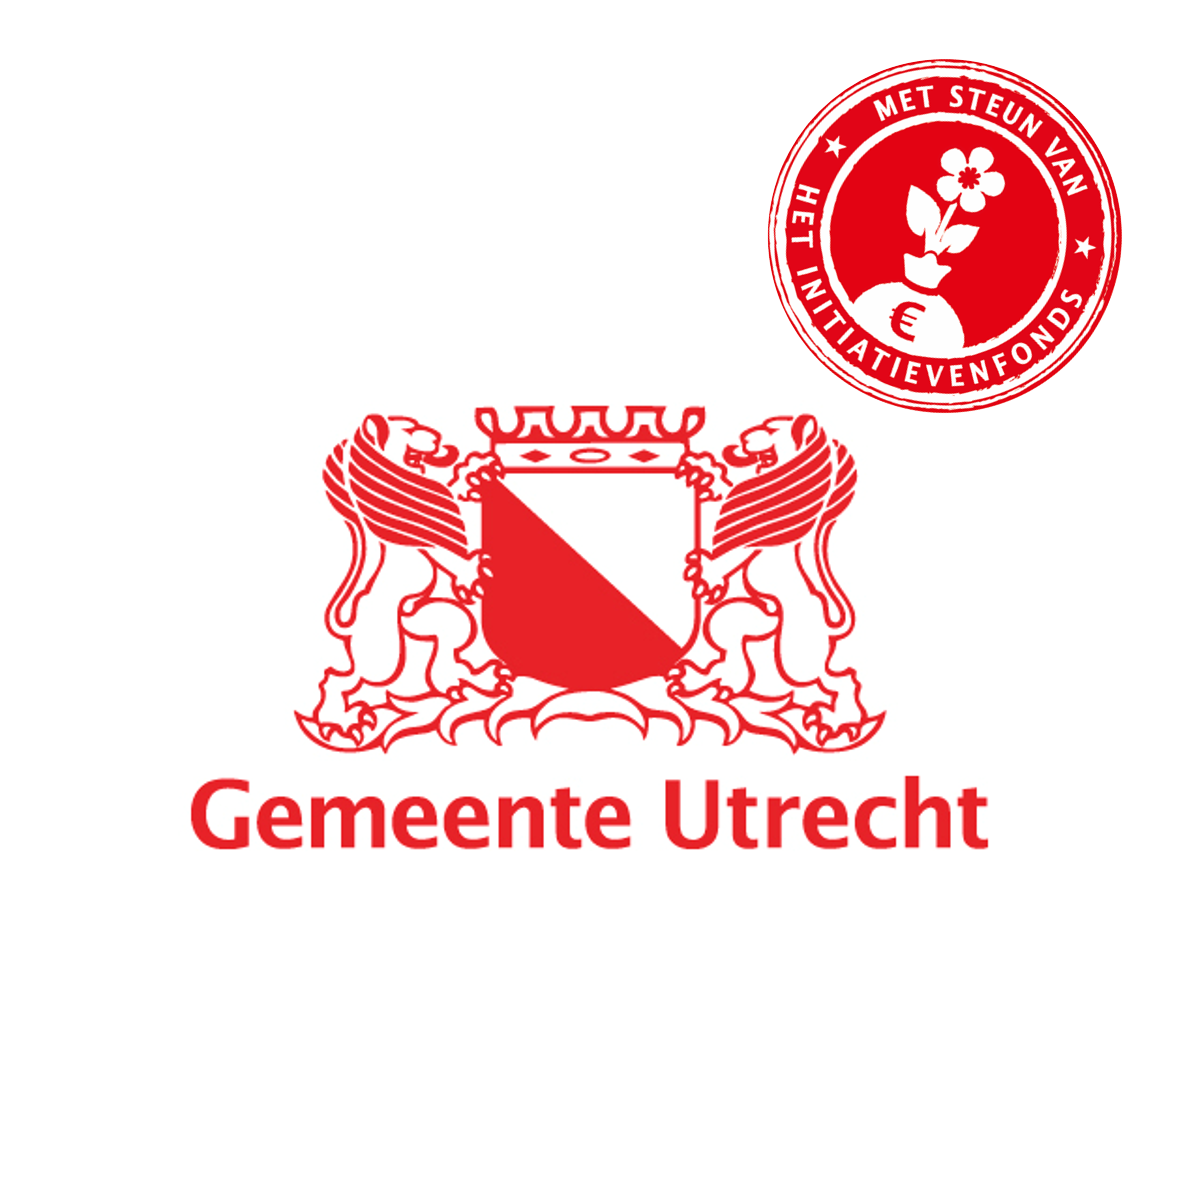 Gemeente Utrecht Initiatievenfonds